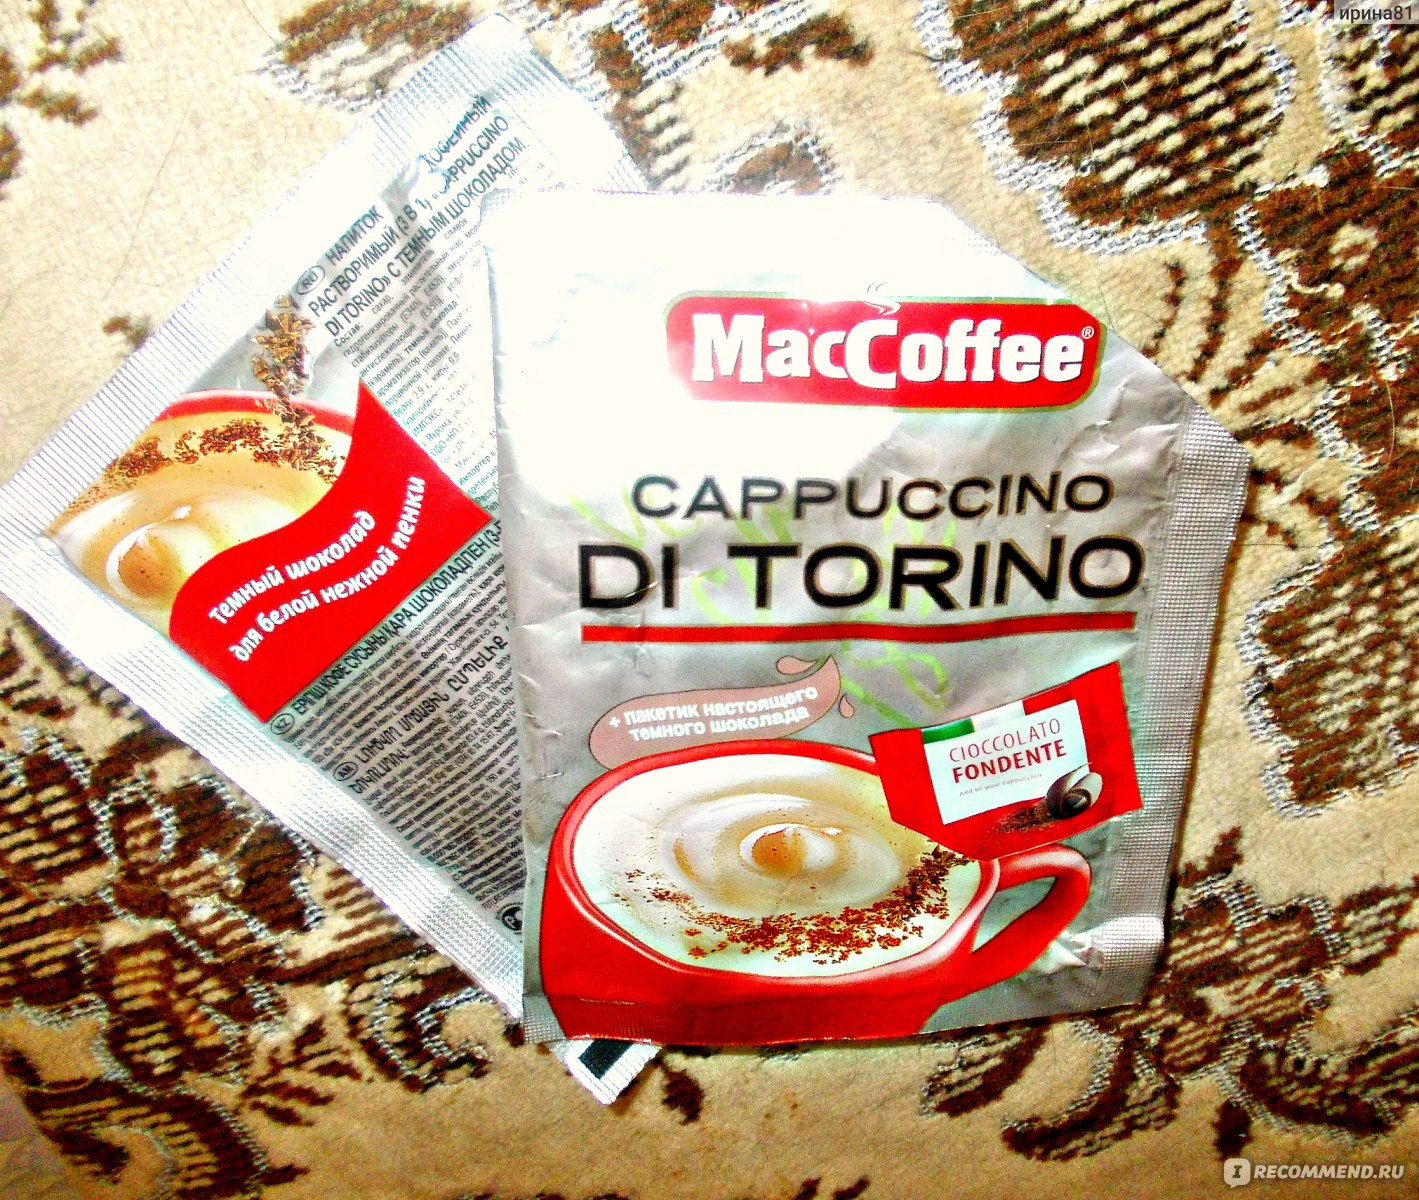 Маккофе ди торино. Кофе MACCOFFEE Cappuccino. MACCOFFEE Cappuccino di Torino большая упаковка. Маккофе капучино с шоколадной крошкой.